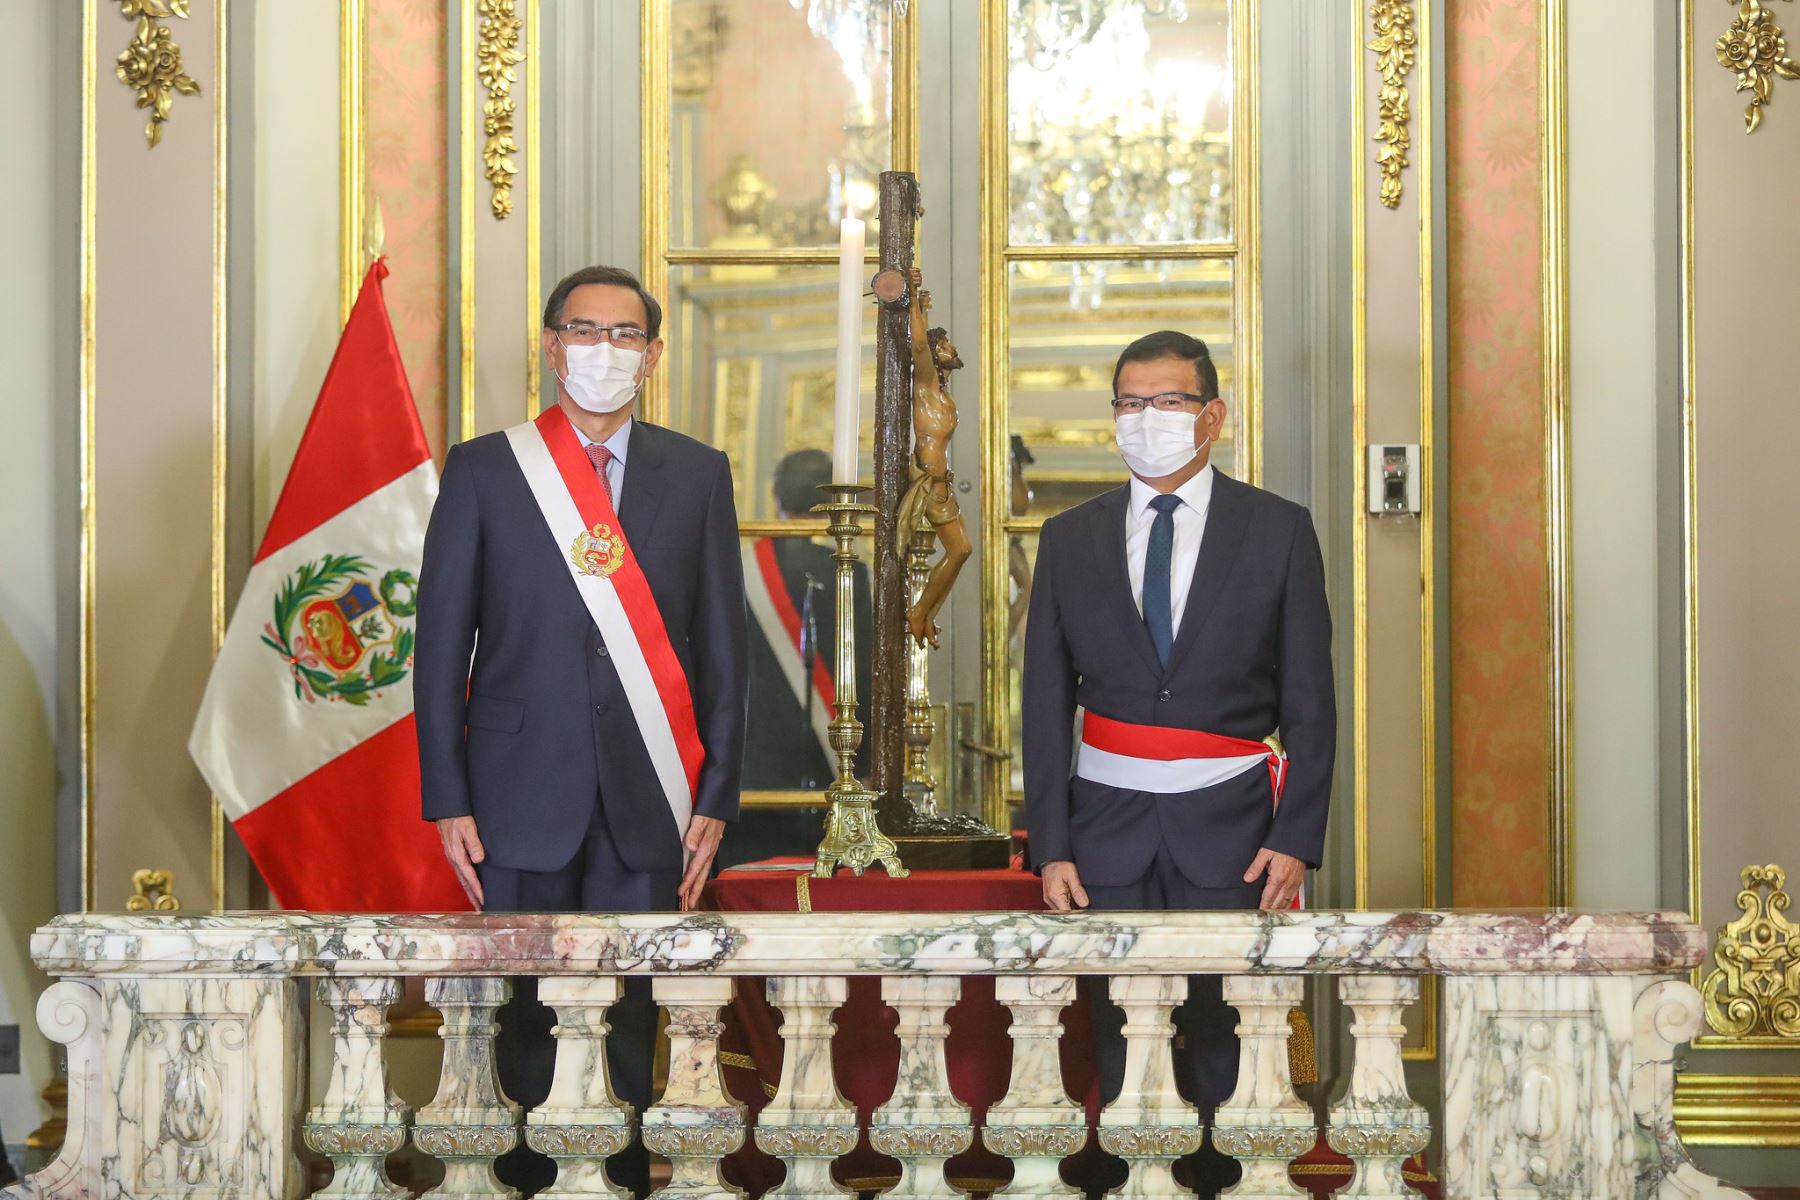 El presidente de la República, Martín Vizcarra, toma juramento a Jorge Montenegro como ministro de Agricultura y Riego.

Foto: ANDINA/ Prensa Presidencia